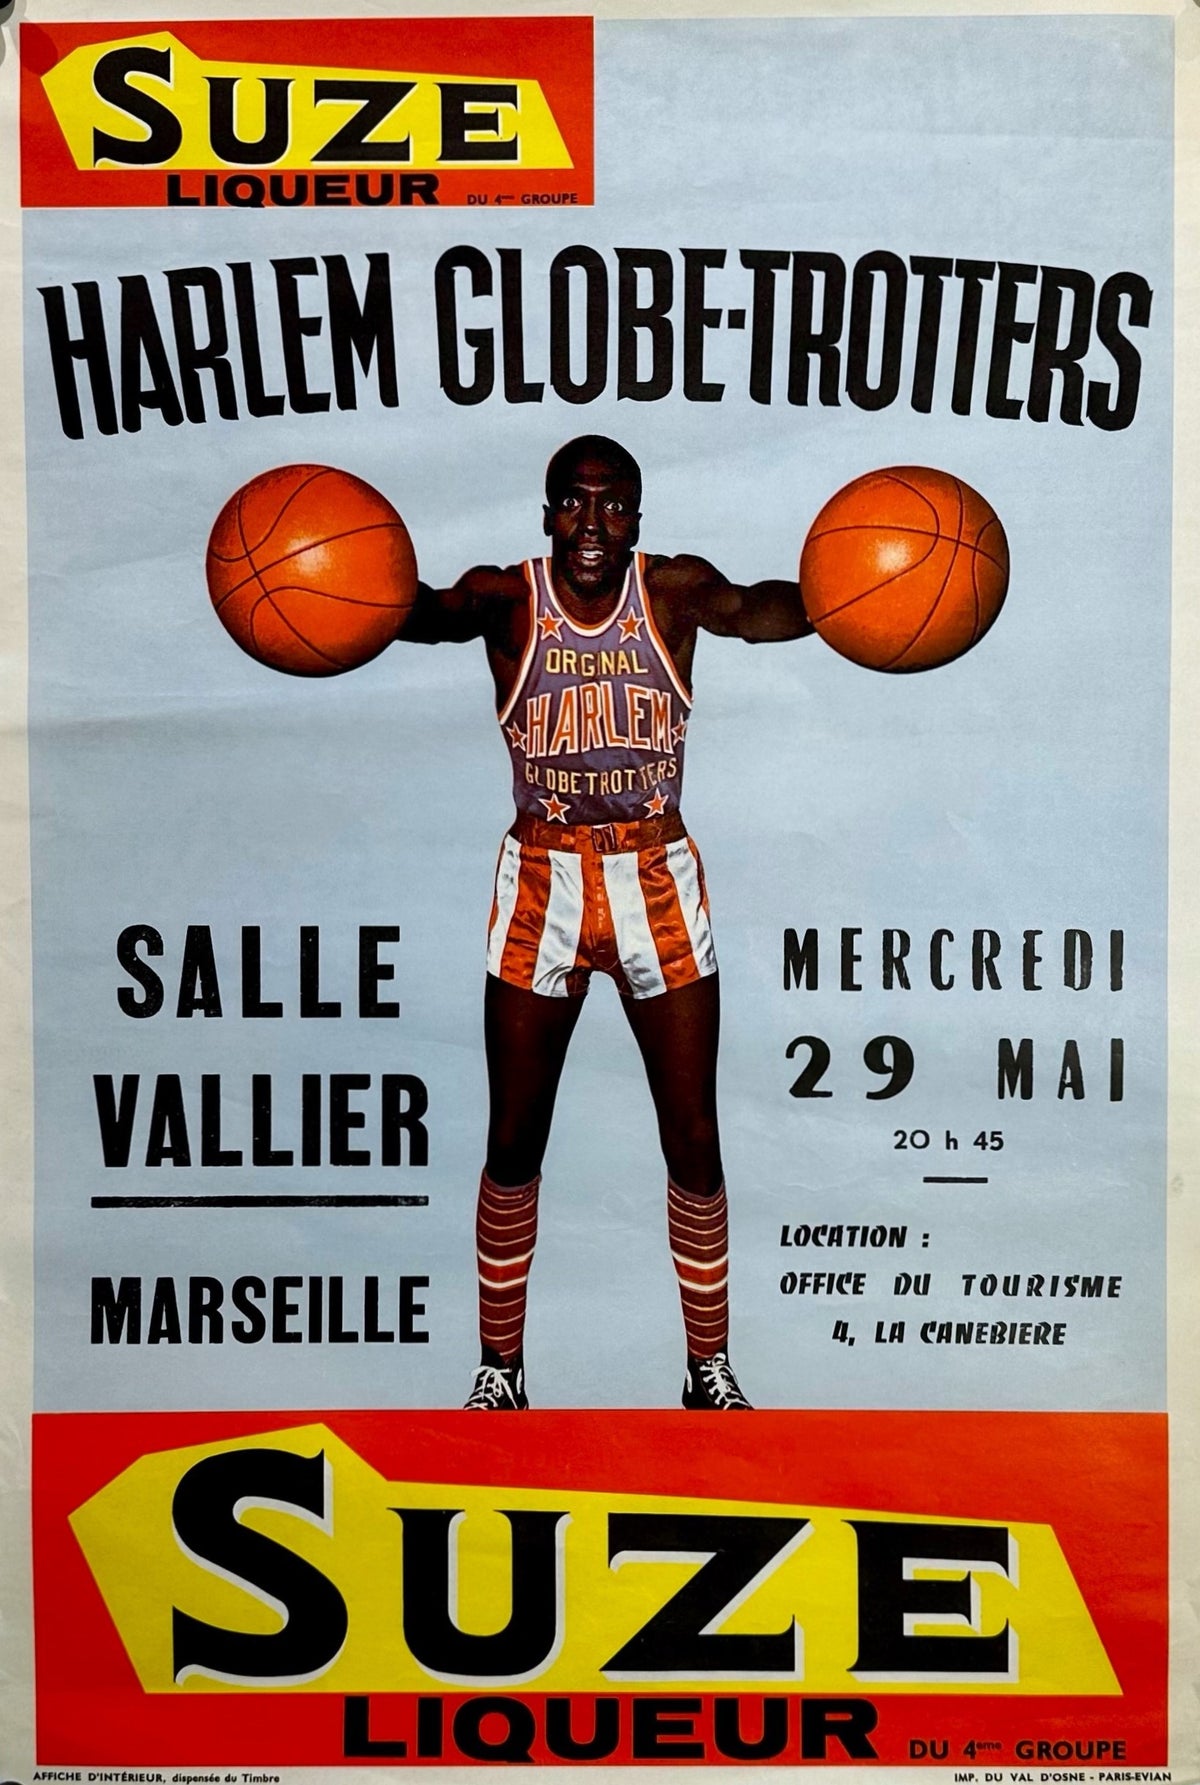 Harlem Globe Trotters- Suze Liqueur - Authentic Vintage Poster